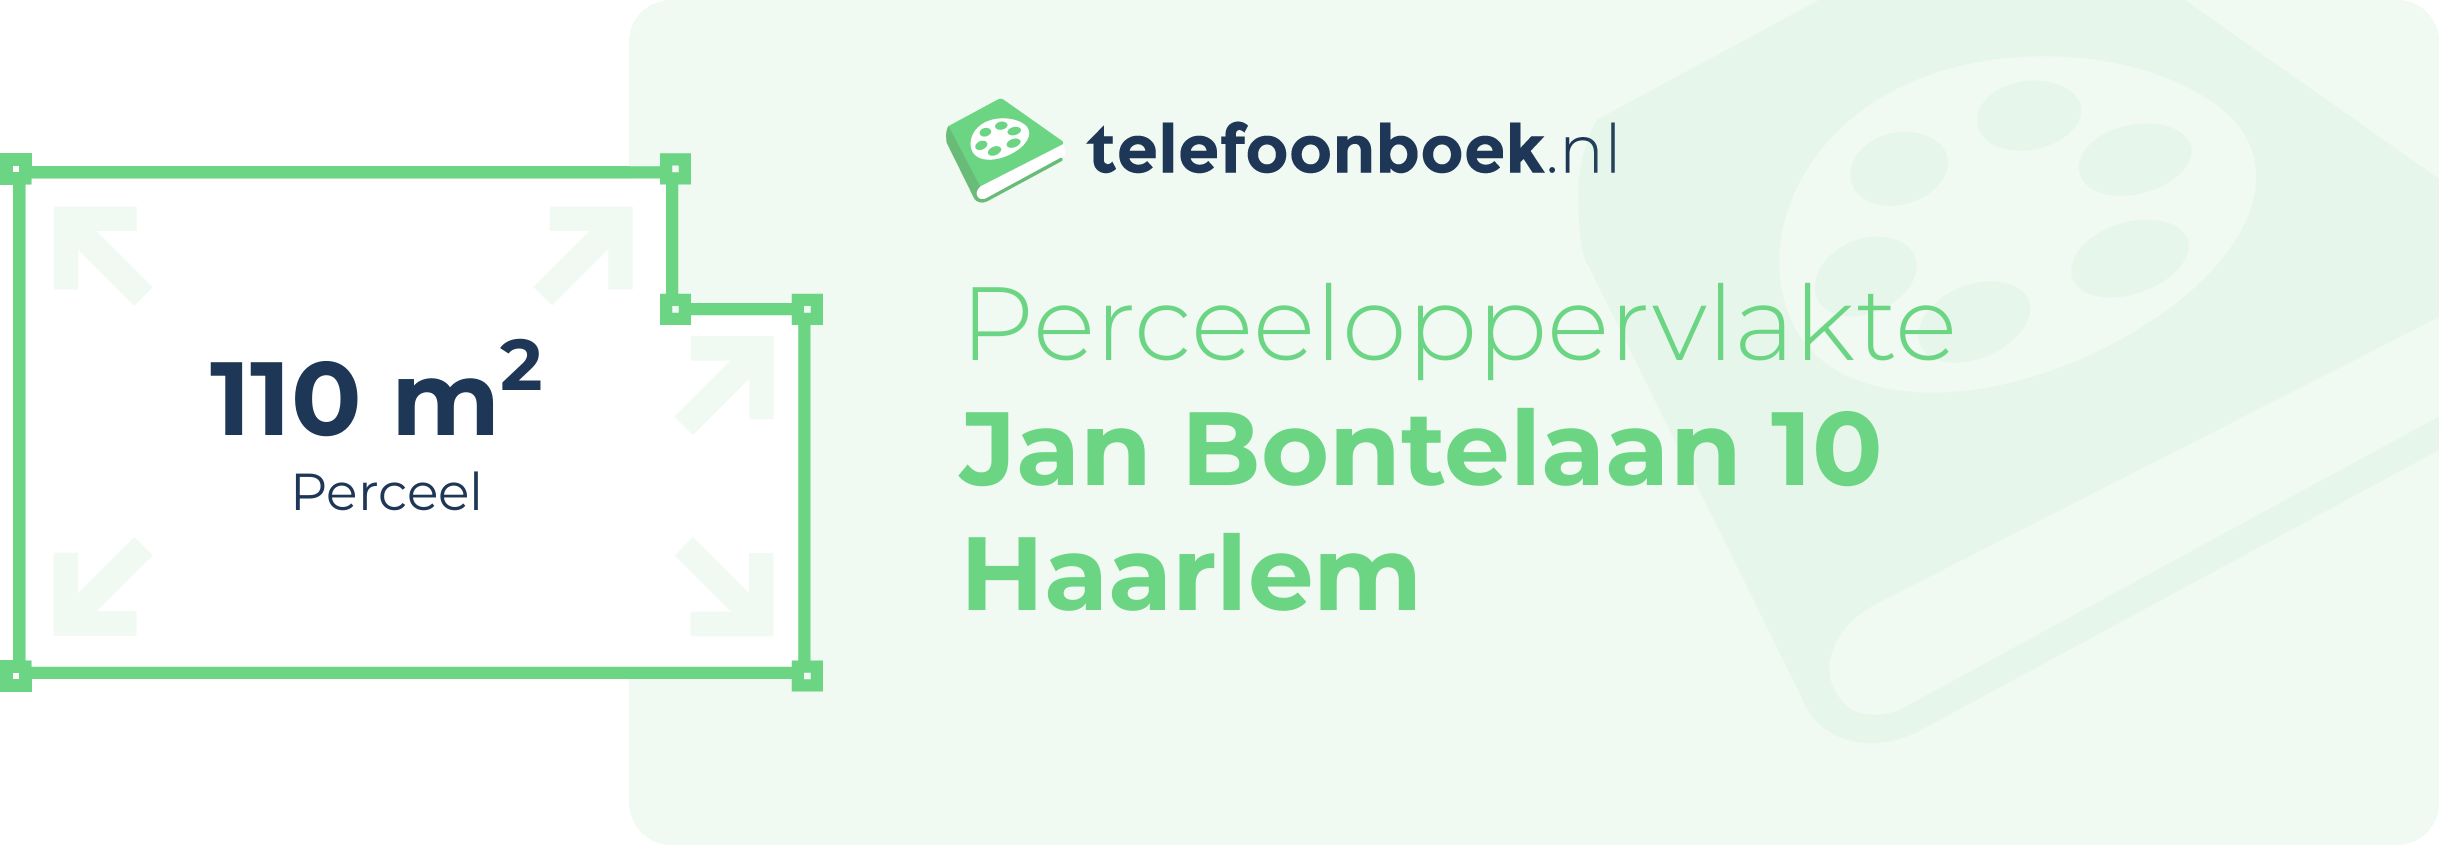 Perceeloppervlakte Jan Bontelaan 10 Haarlem